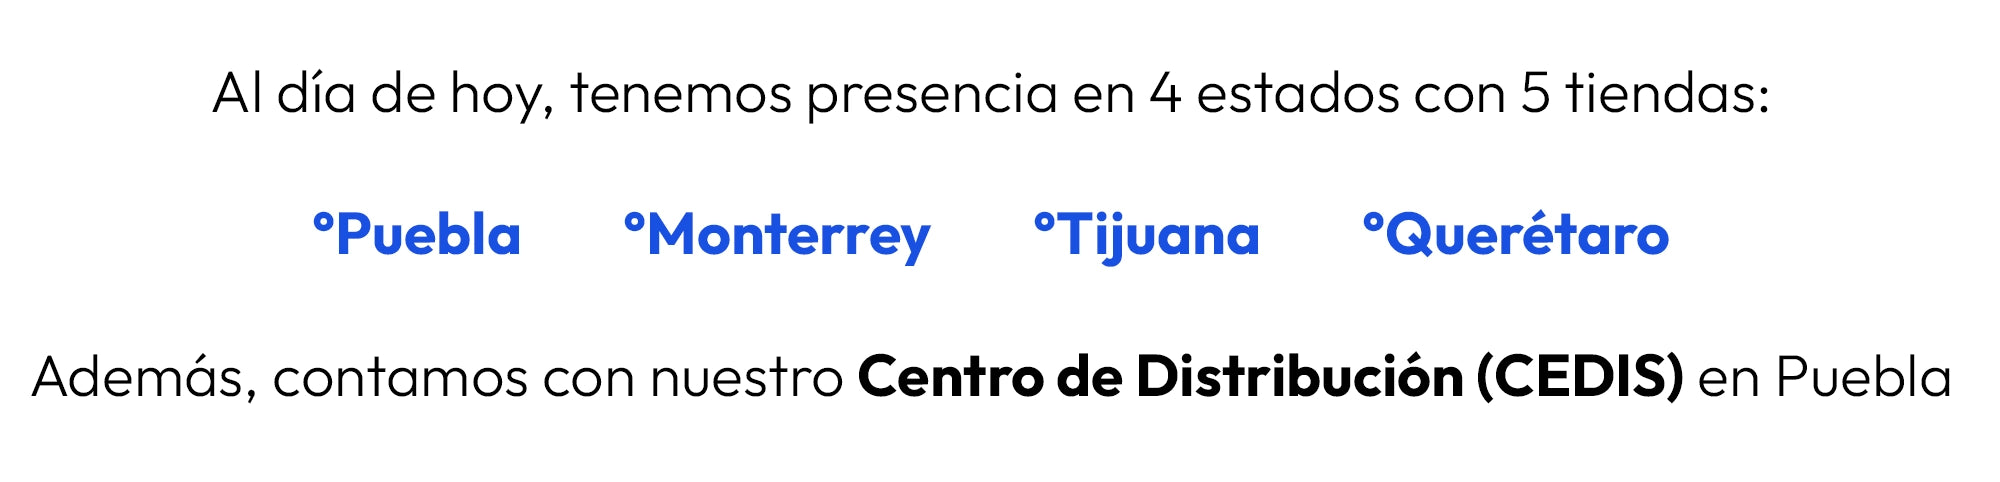 Al día de hoy, tenemos presencia en 4 estados con 5 tiendas: Puebla, Monterrey, Tijuana, Querétaro y CEDIS